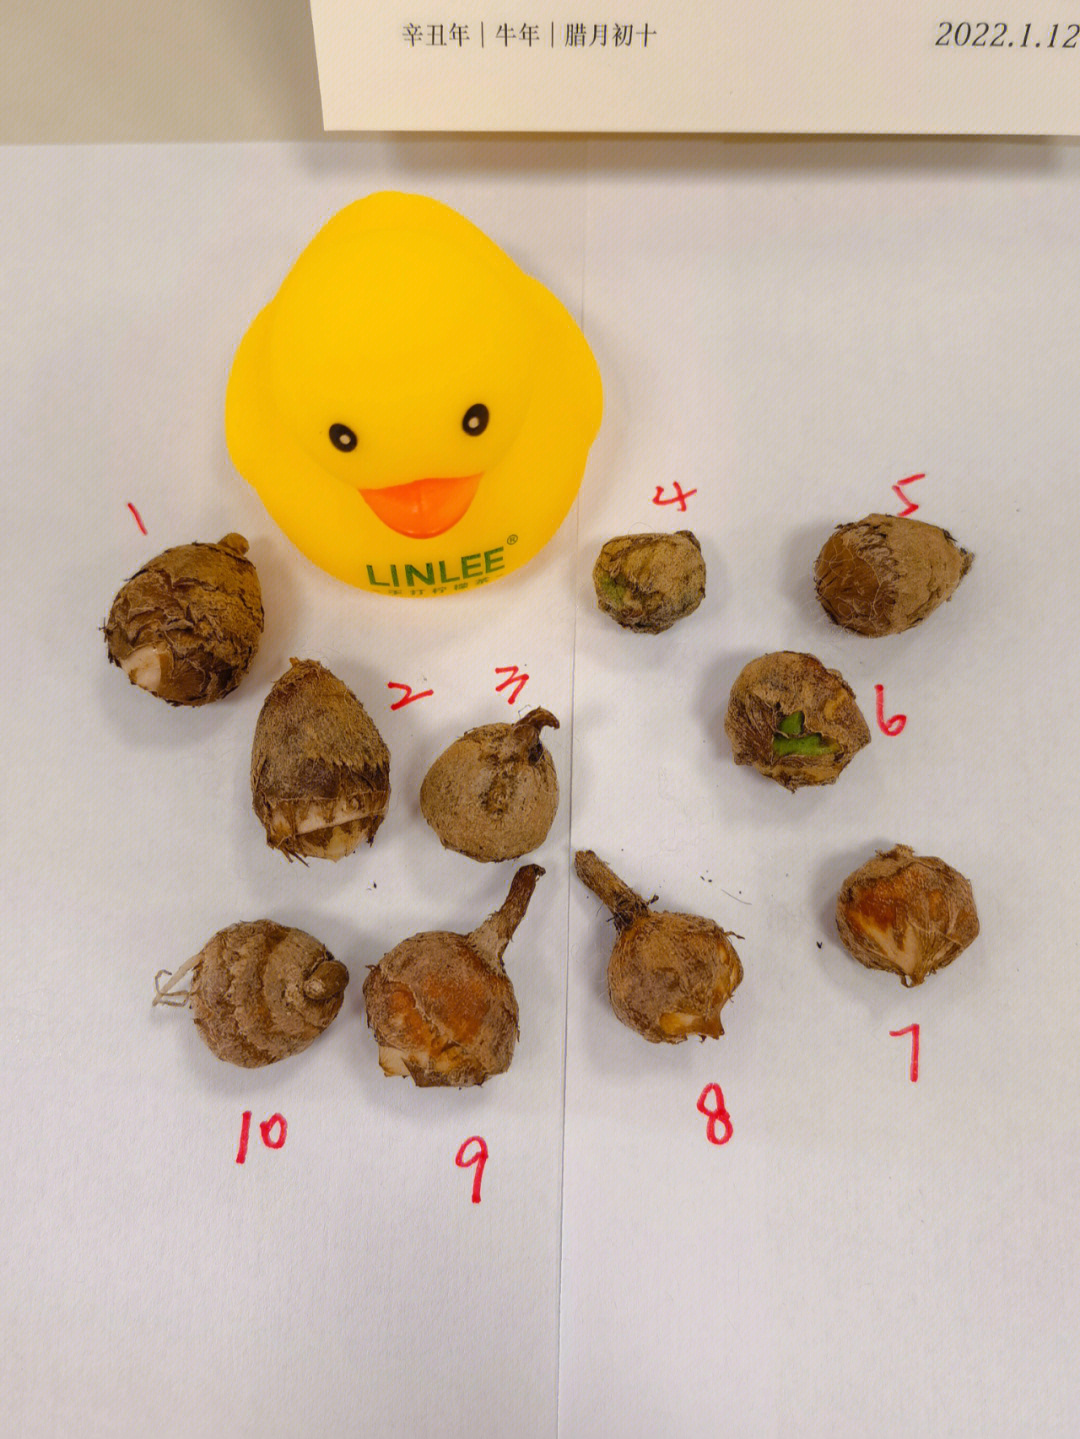 鹅蛋孵化过程照蛋图图片